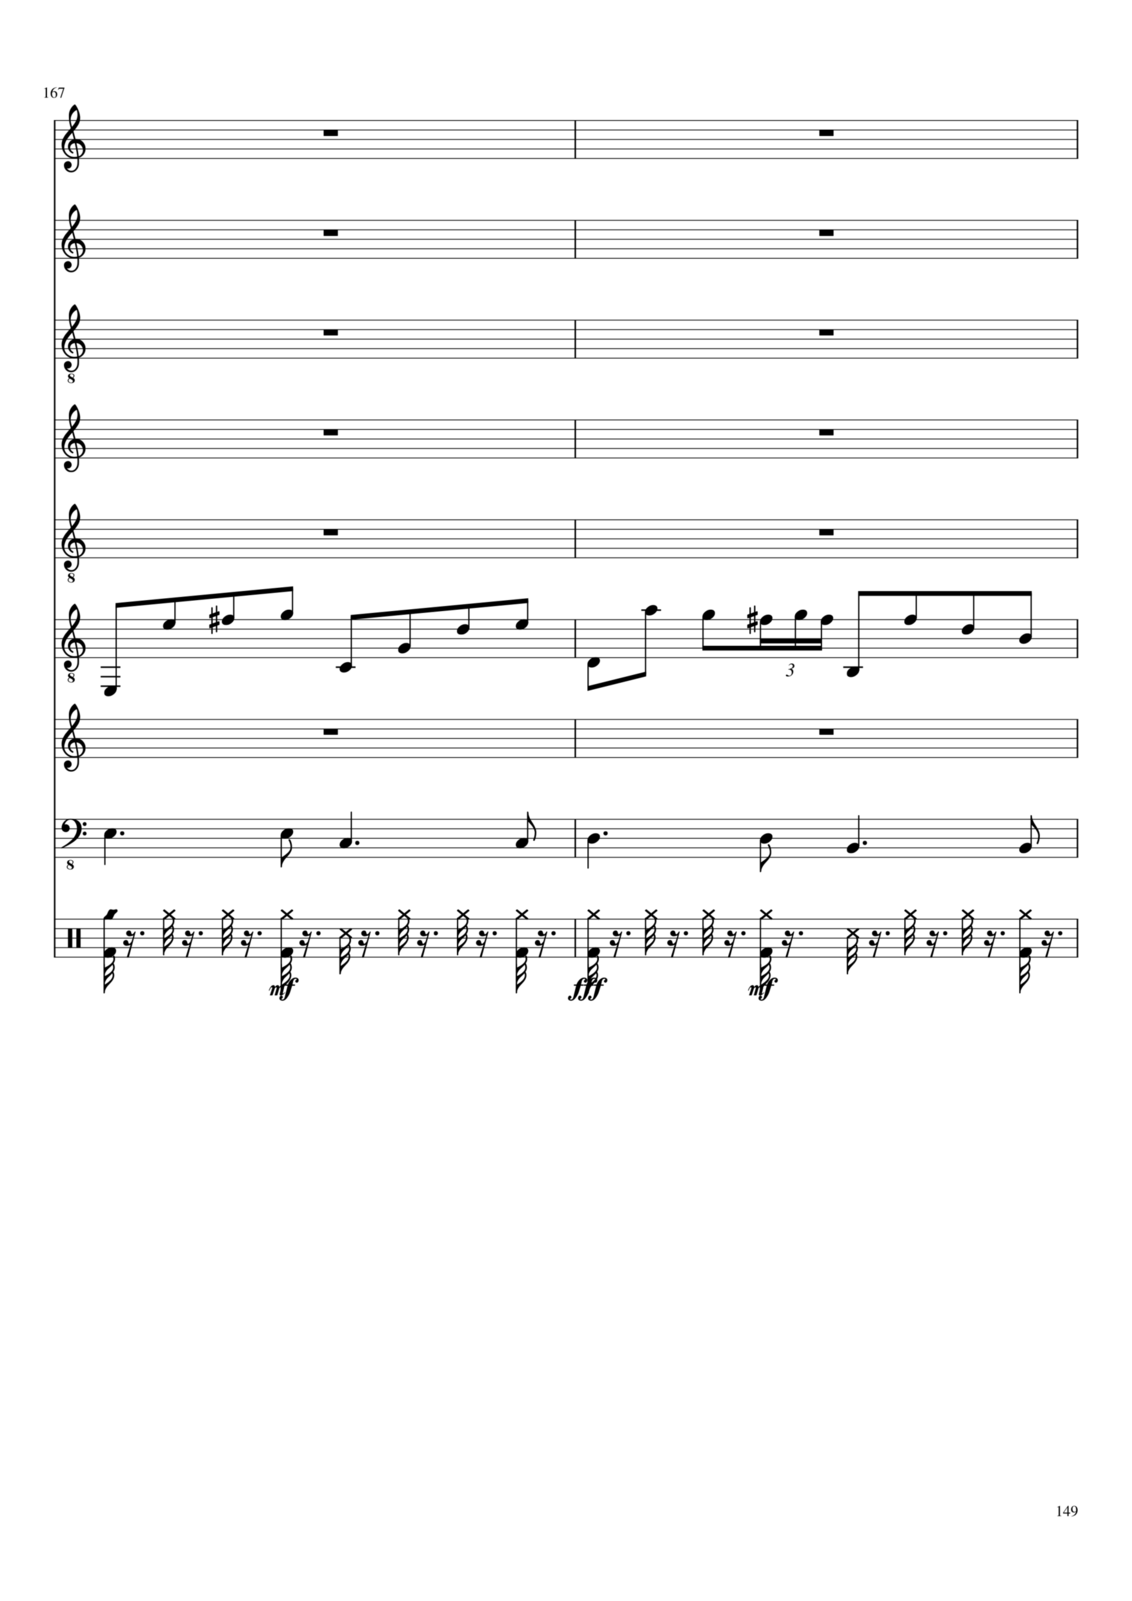 Utro polinyi slide, Image 124